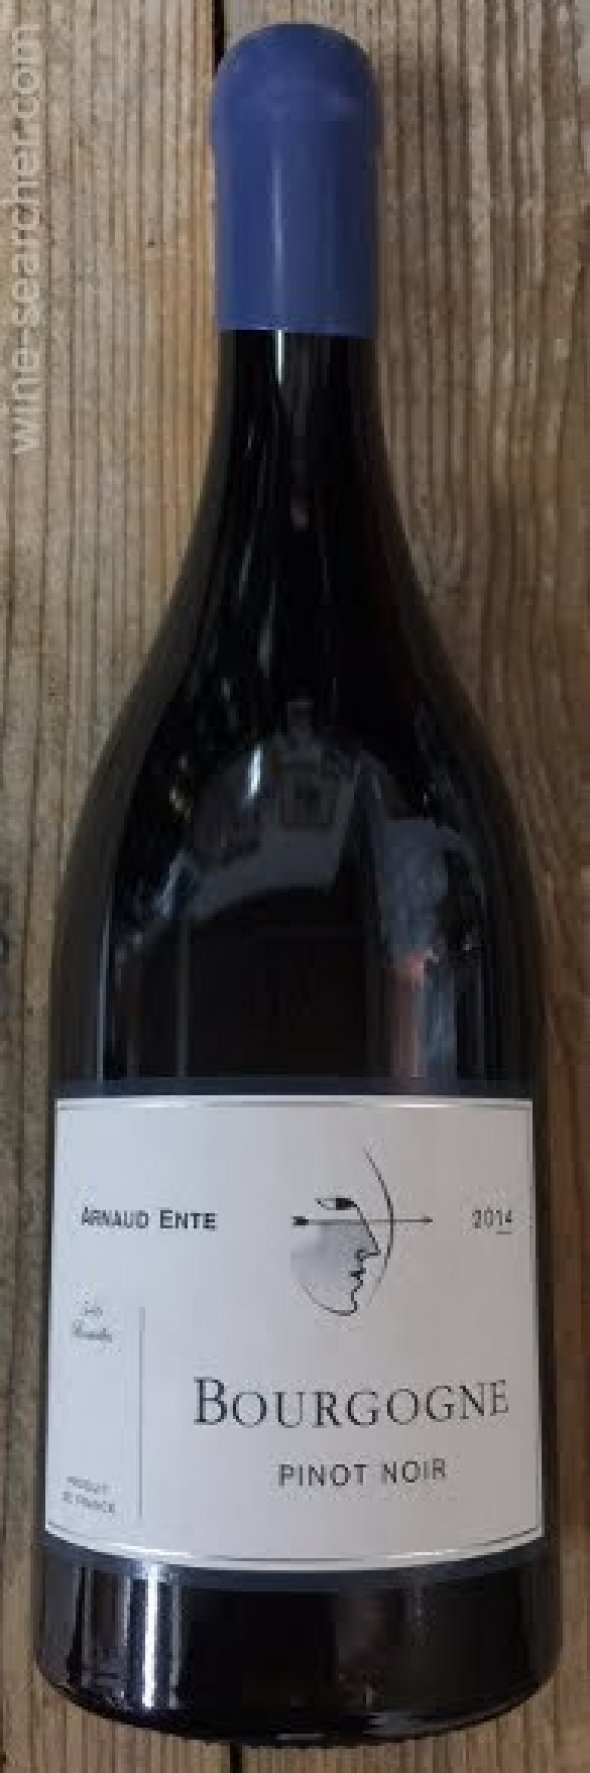 Domaine Arnaud Ente Bourgogne Pinot Noir 2015 